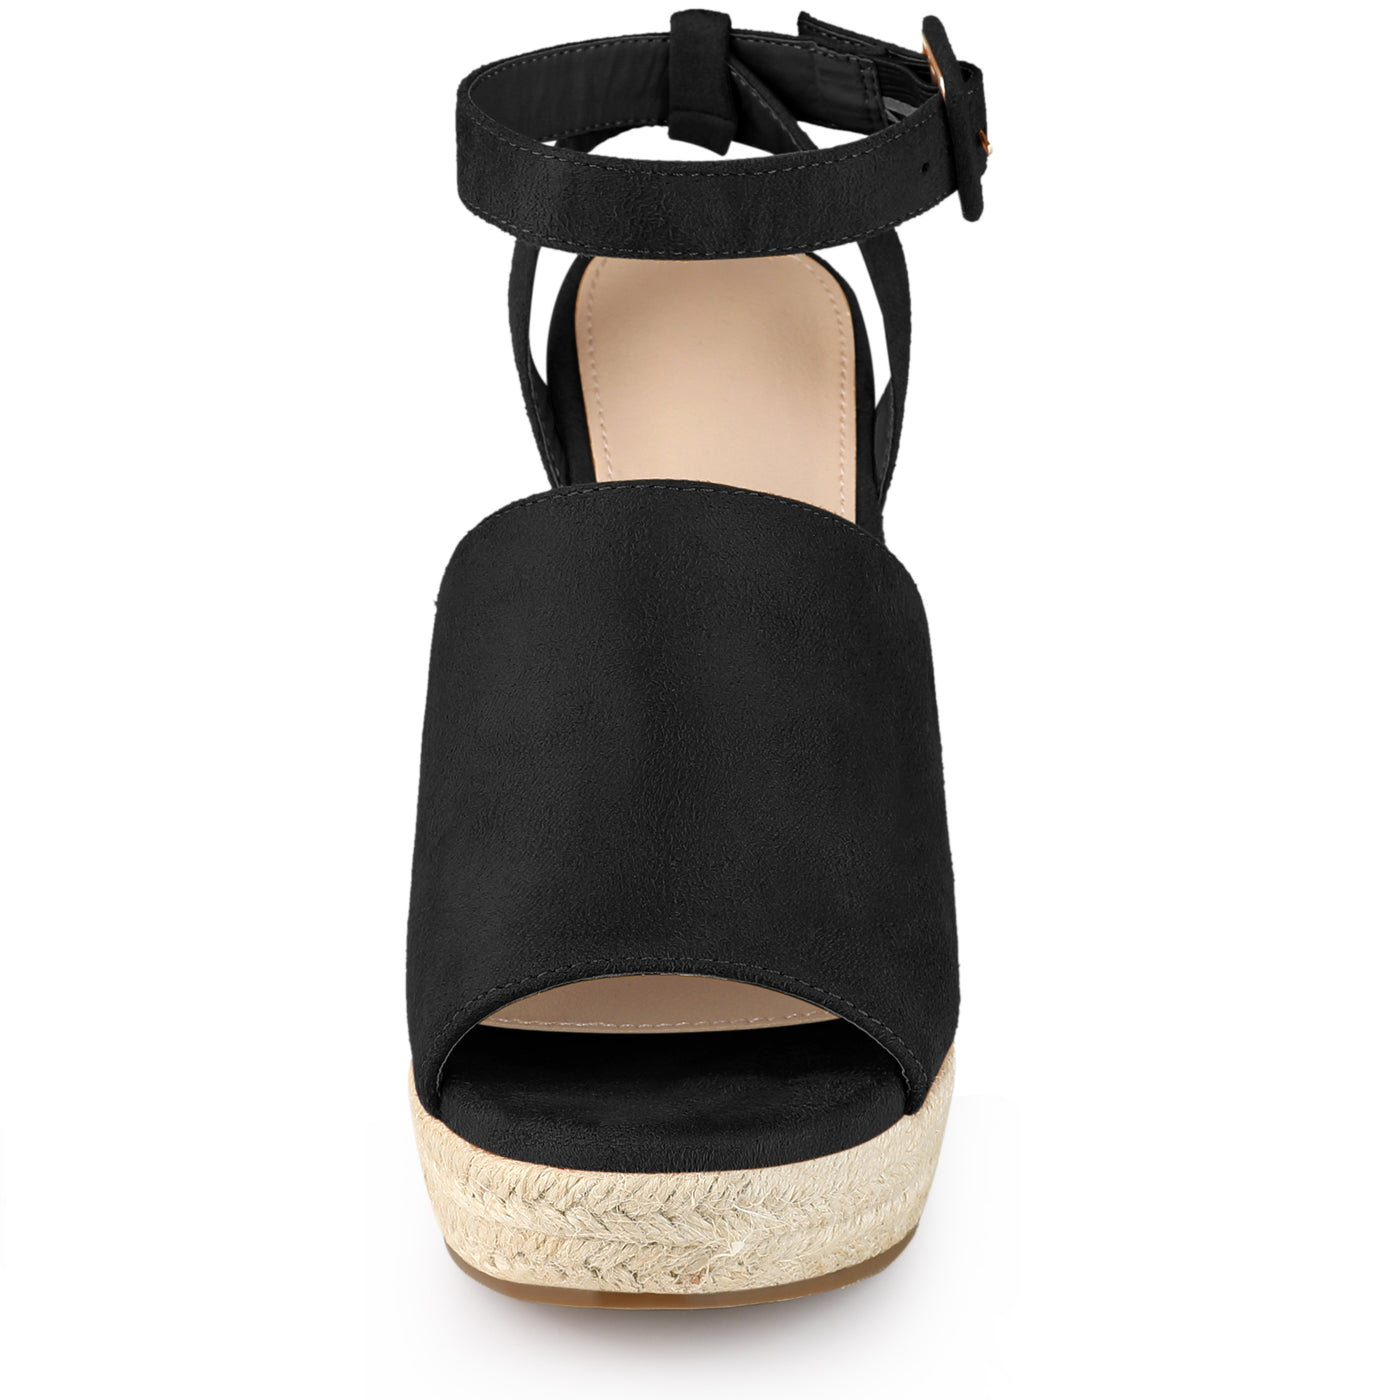 Allegra K Women's Slingback Open Toe Buckle Espadrille Wedge Heel Sandals